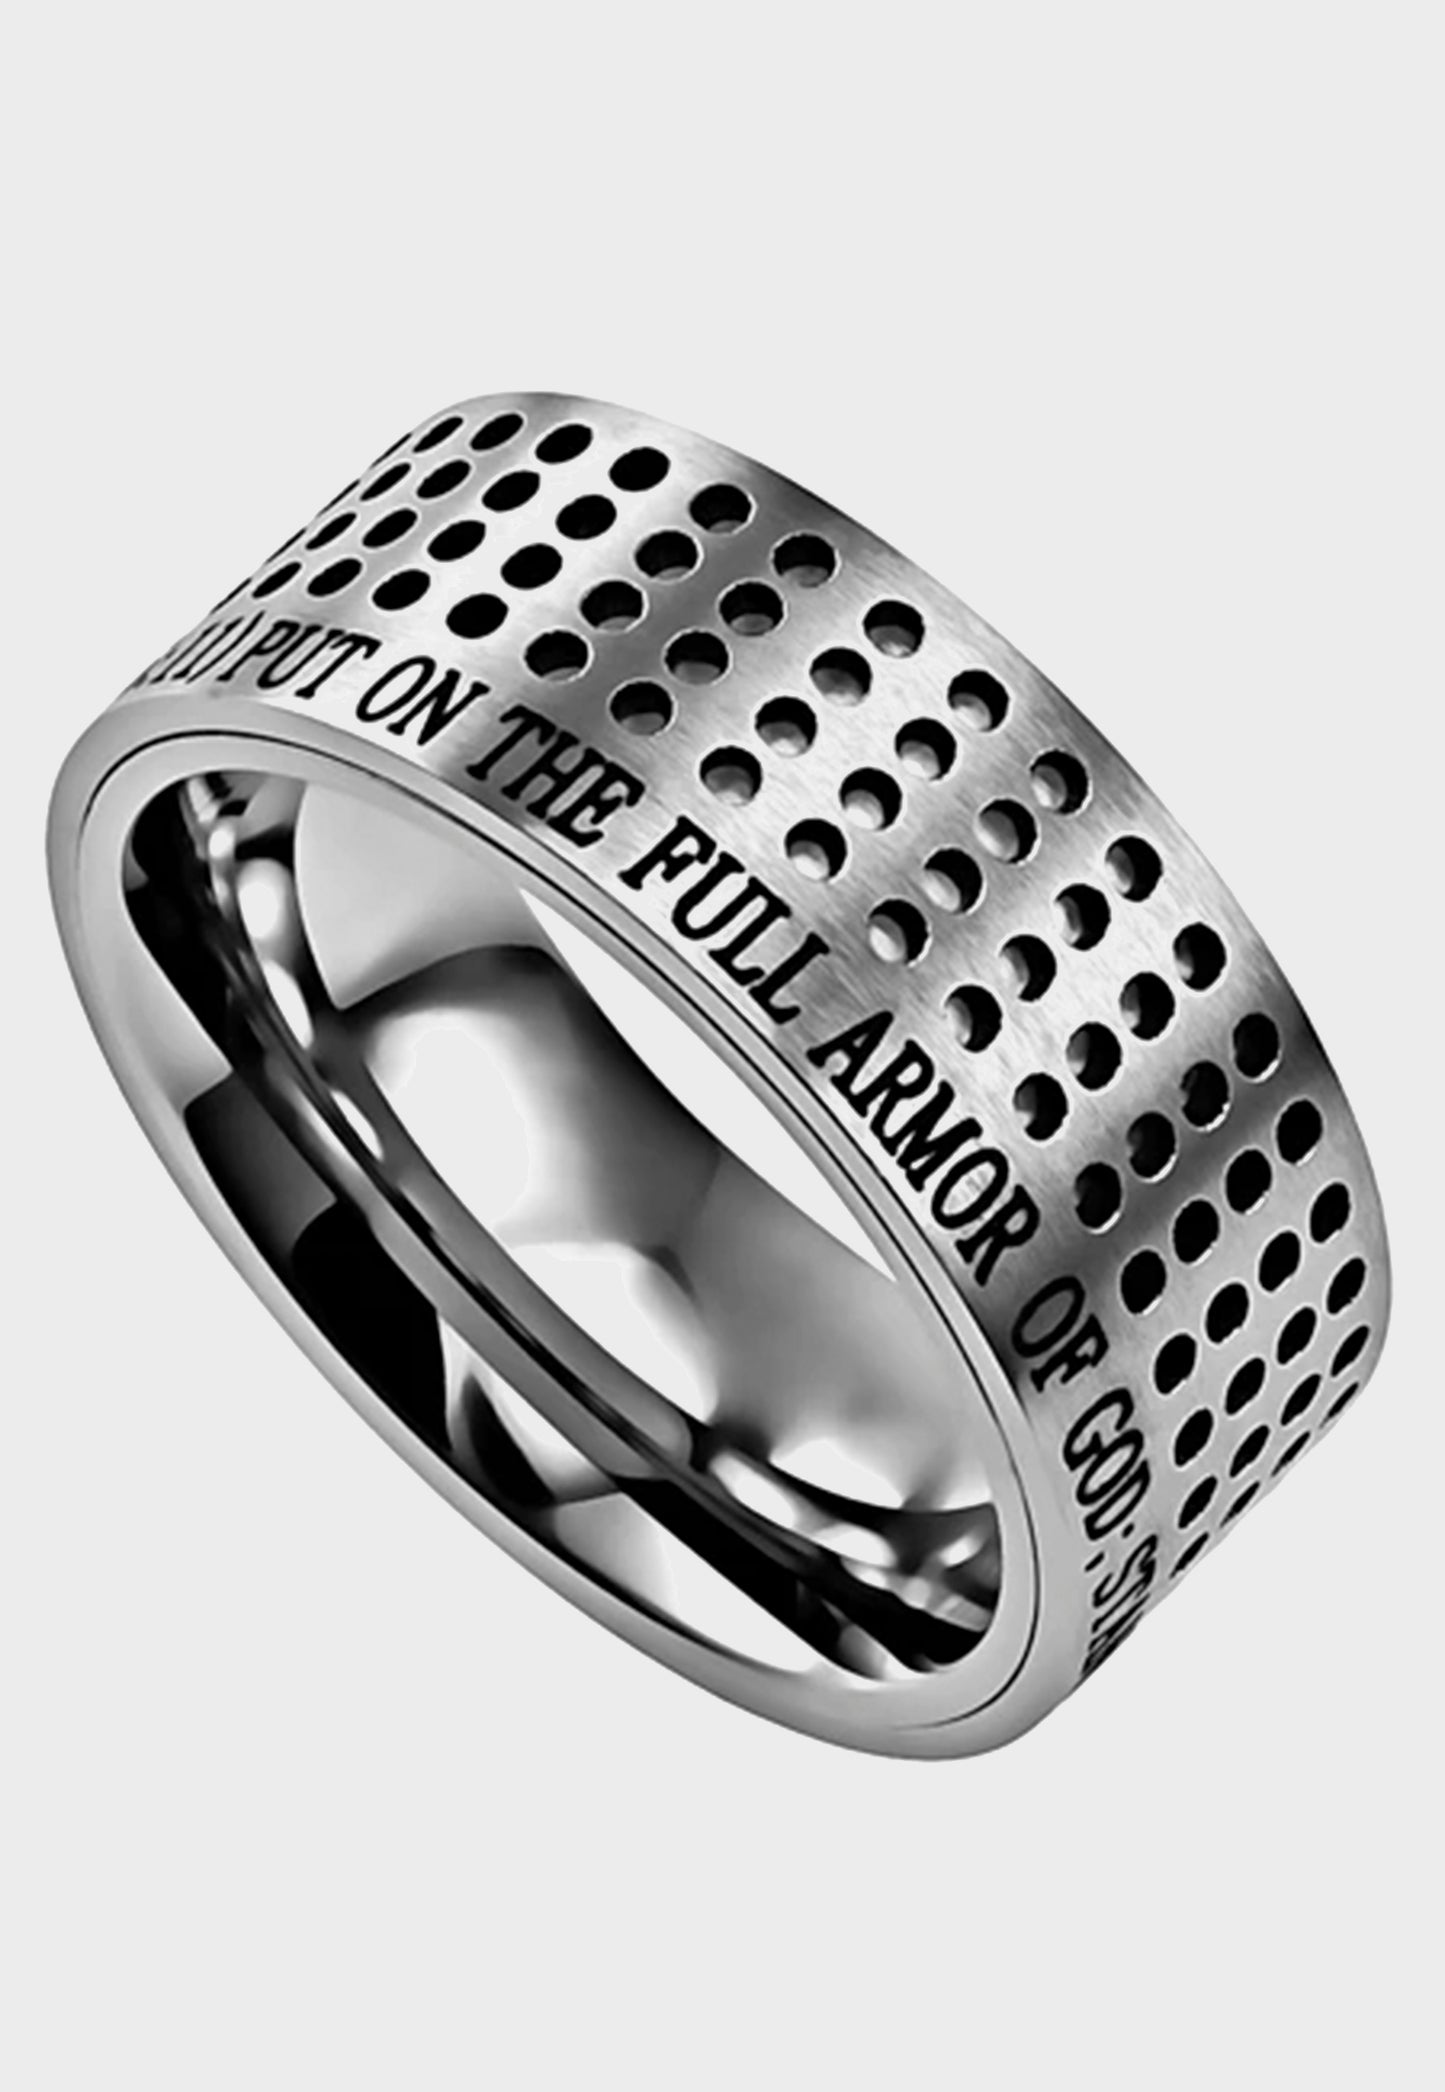 Armor of God men's slotted ring